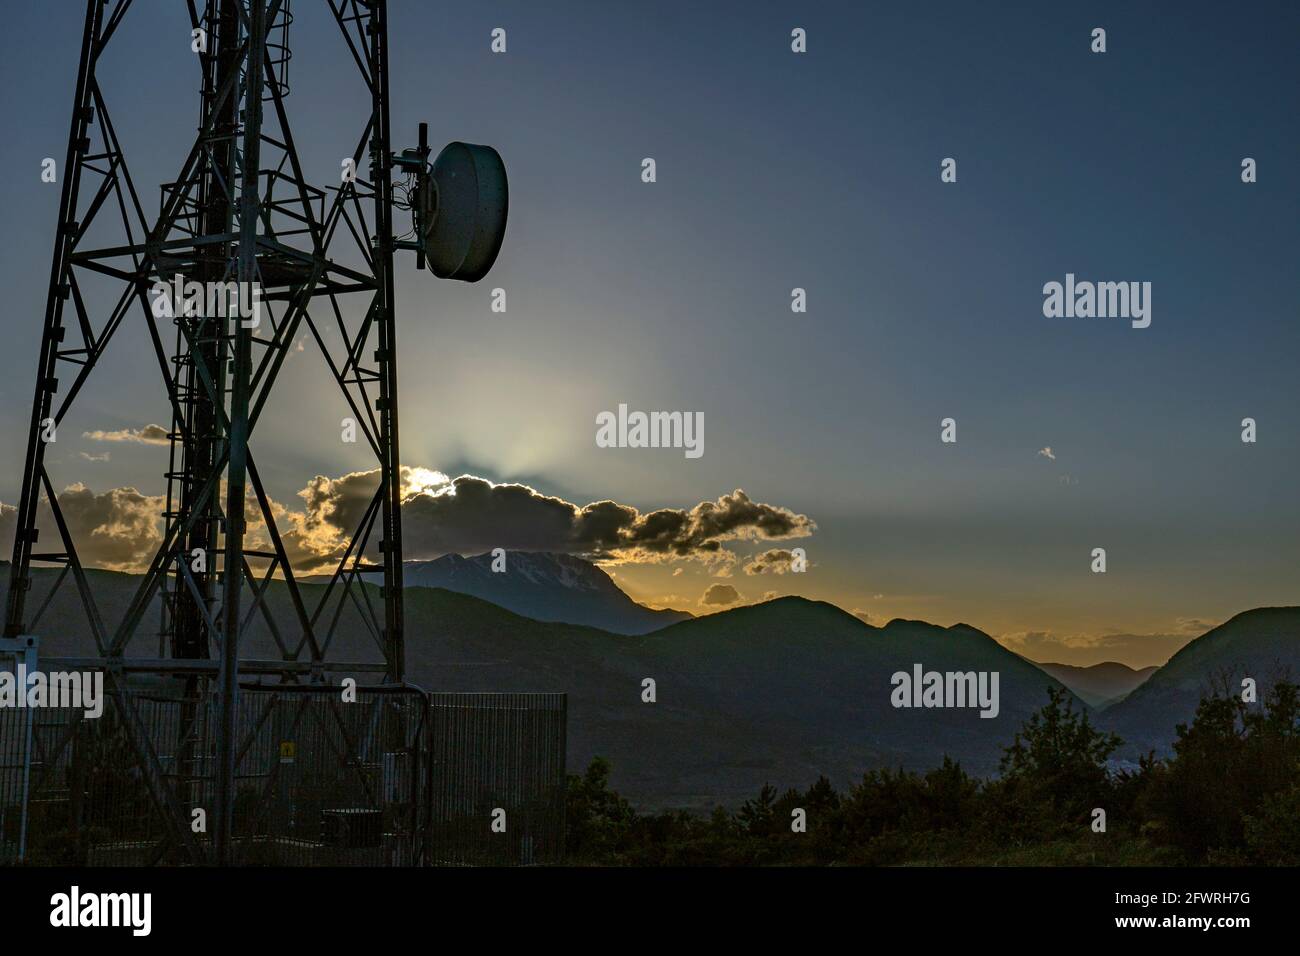 Silhouette des antennes et des répéteurs de signaux de téléphone et de télévision au coucher du soleil. Abruzzes, Italie, Europe Banque D'Images